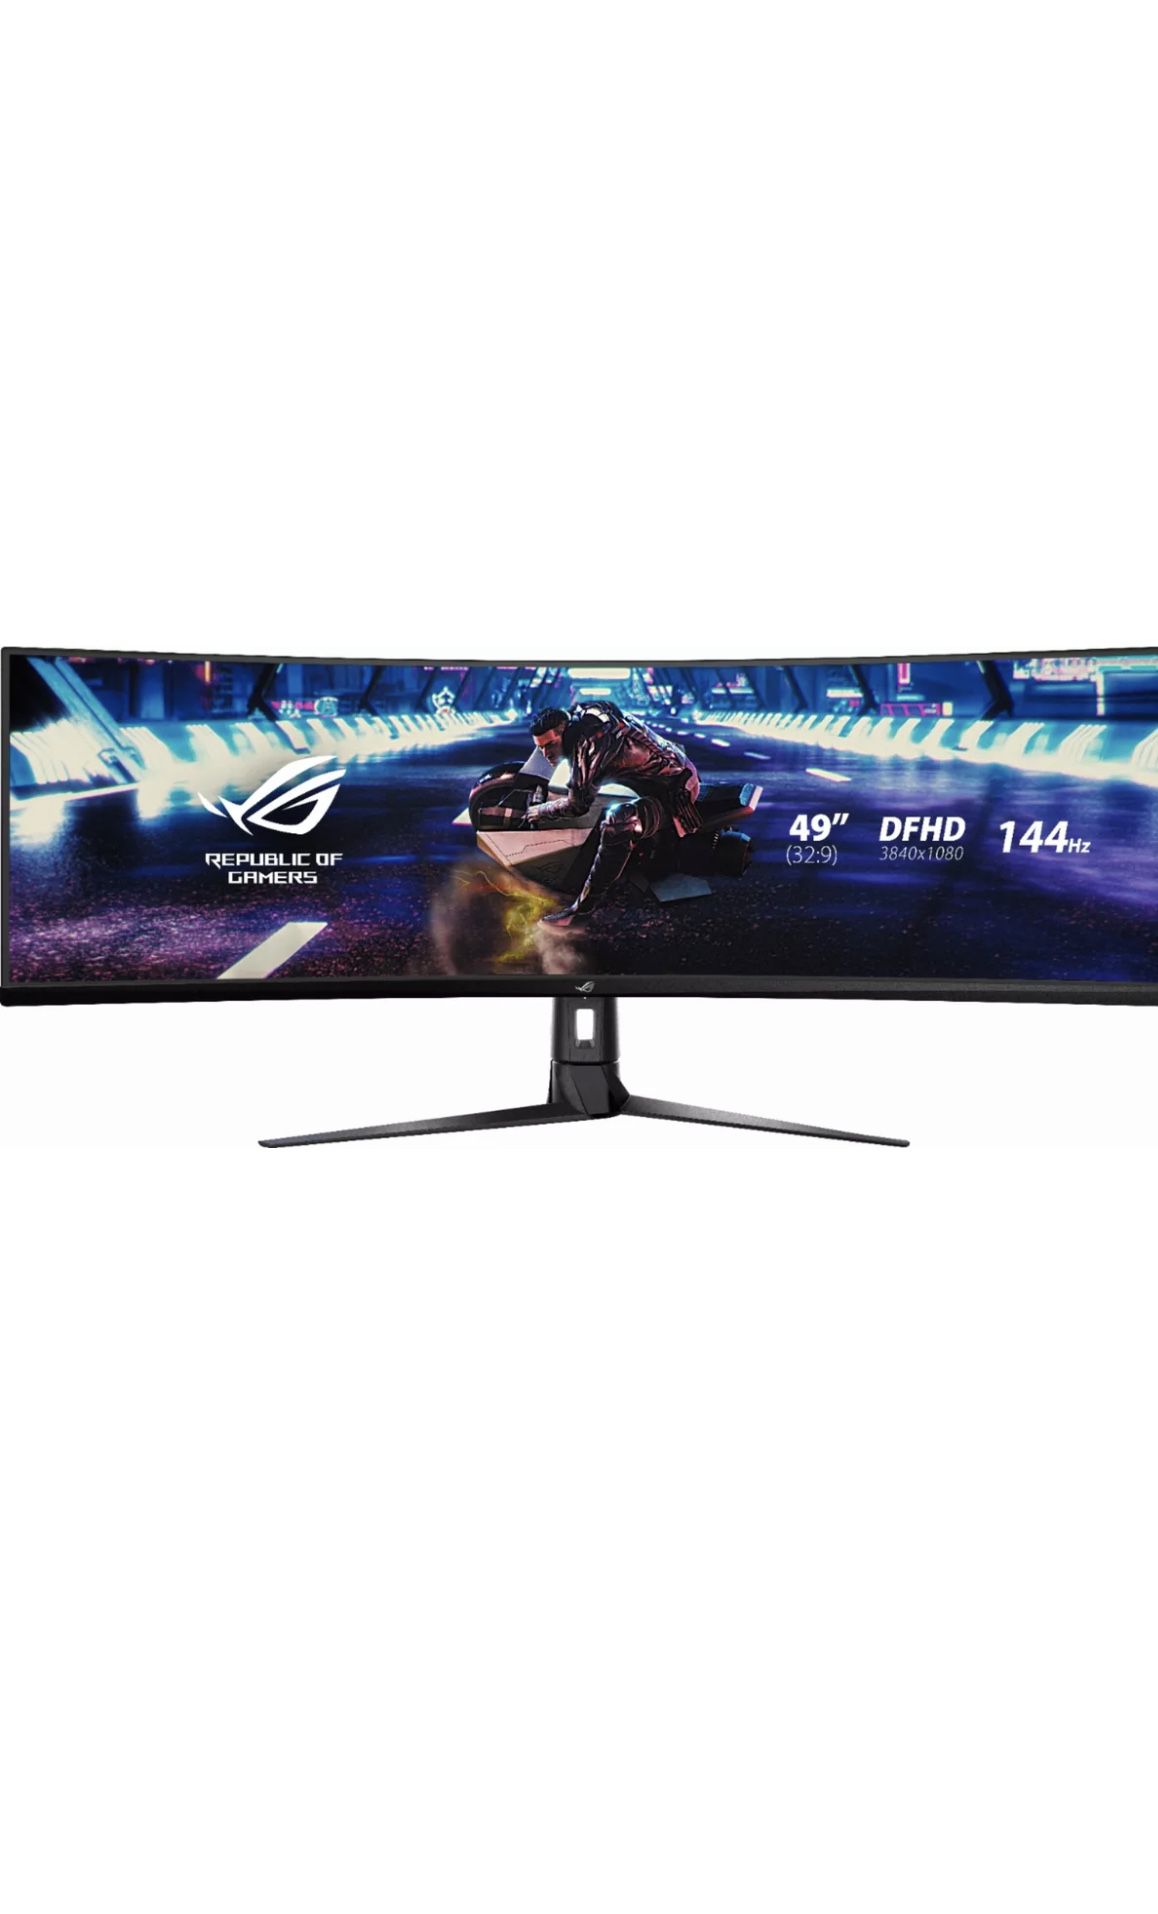 ASUS ROG XG49VQ 49” Ultrawide Gaming Monitor